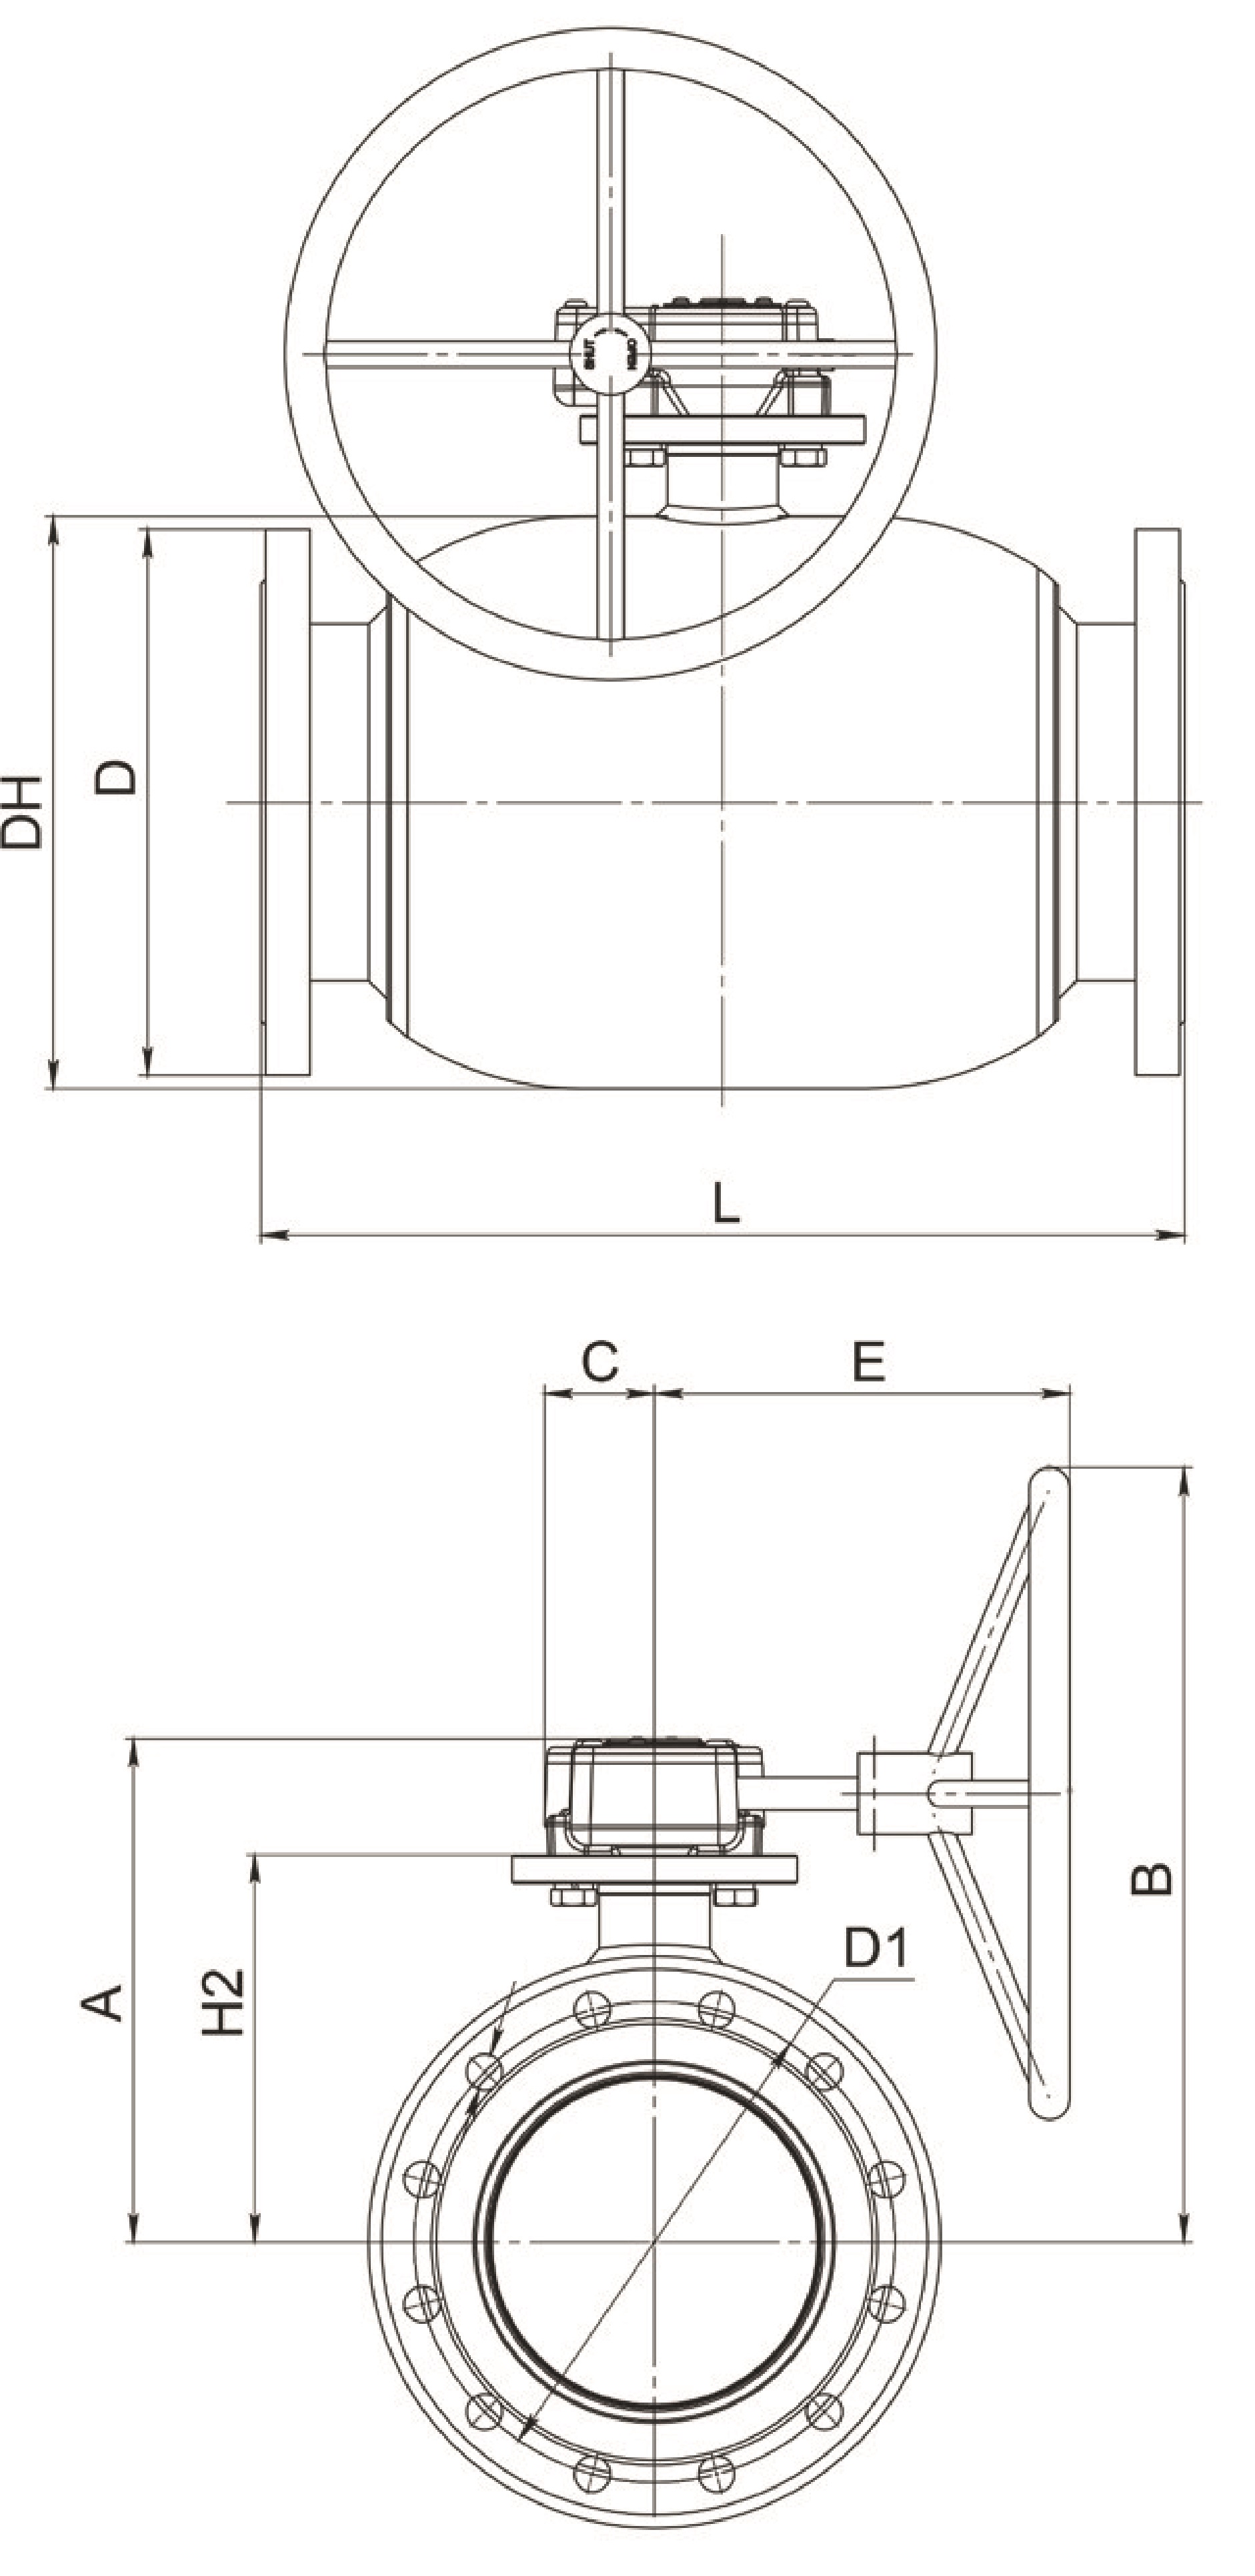 Кран шаровый Broen Ballomax-КШТ61.113.Р.25 Ду150 Ру25 полнопроходный с плавающим шаром, с ISO фланцем, корпус - сталь, уплотнение - EPDM, фланцевый, с редуктором